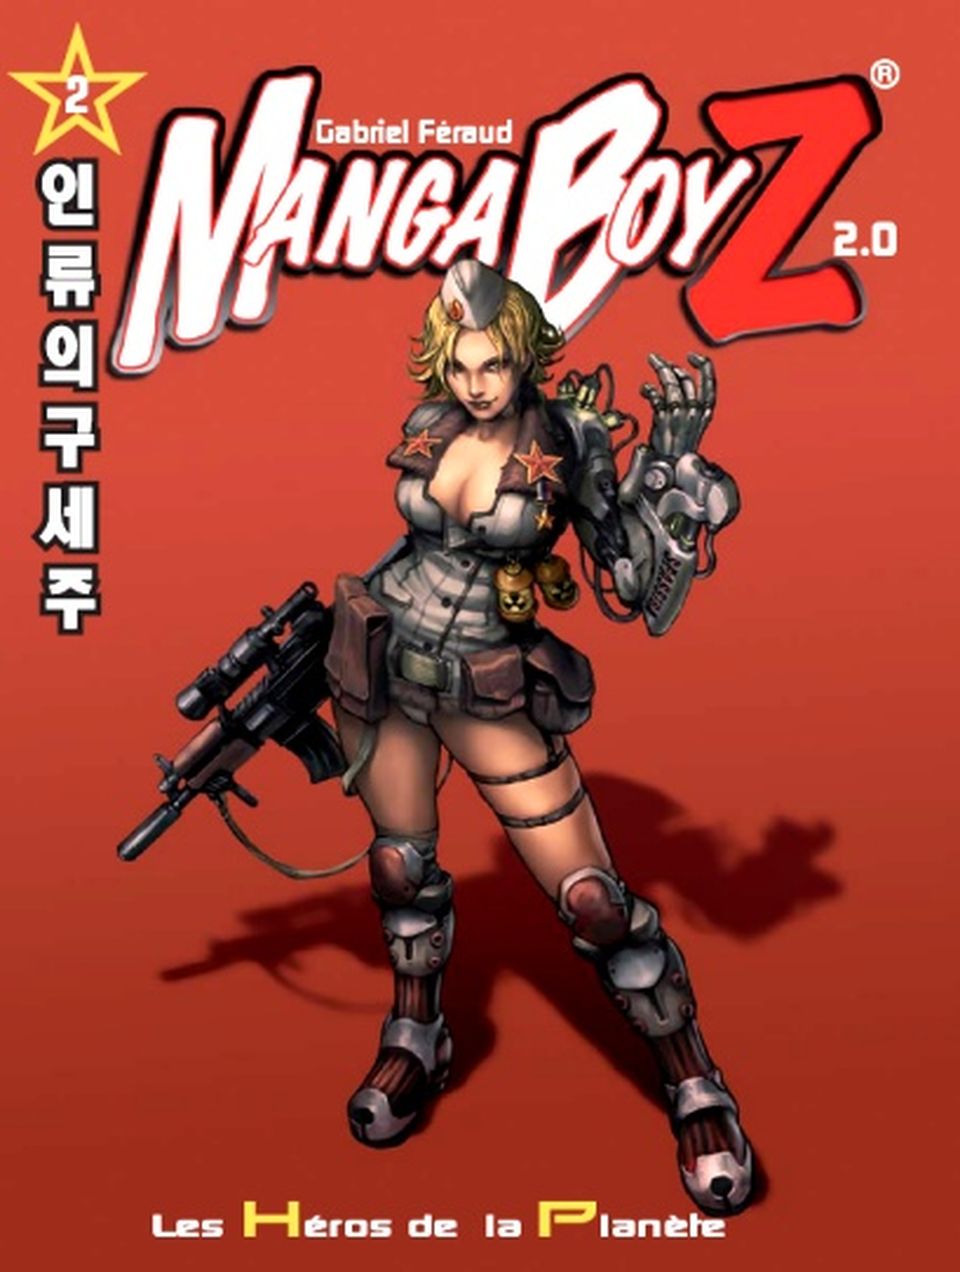 Manga Boyz 2.0 image